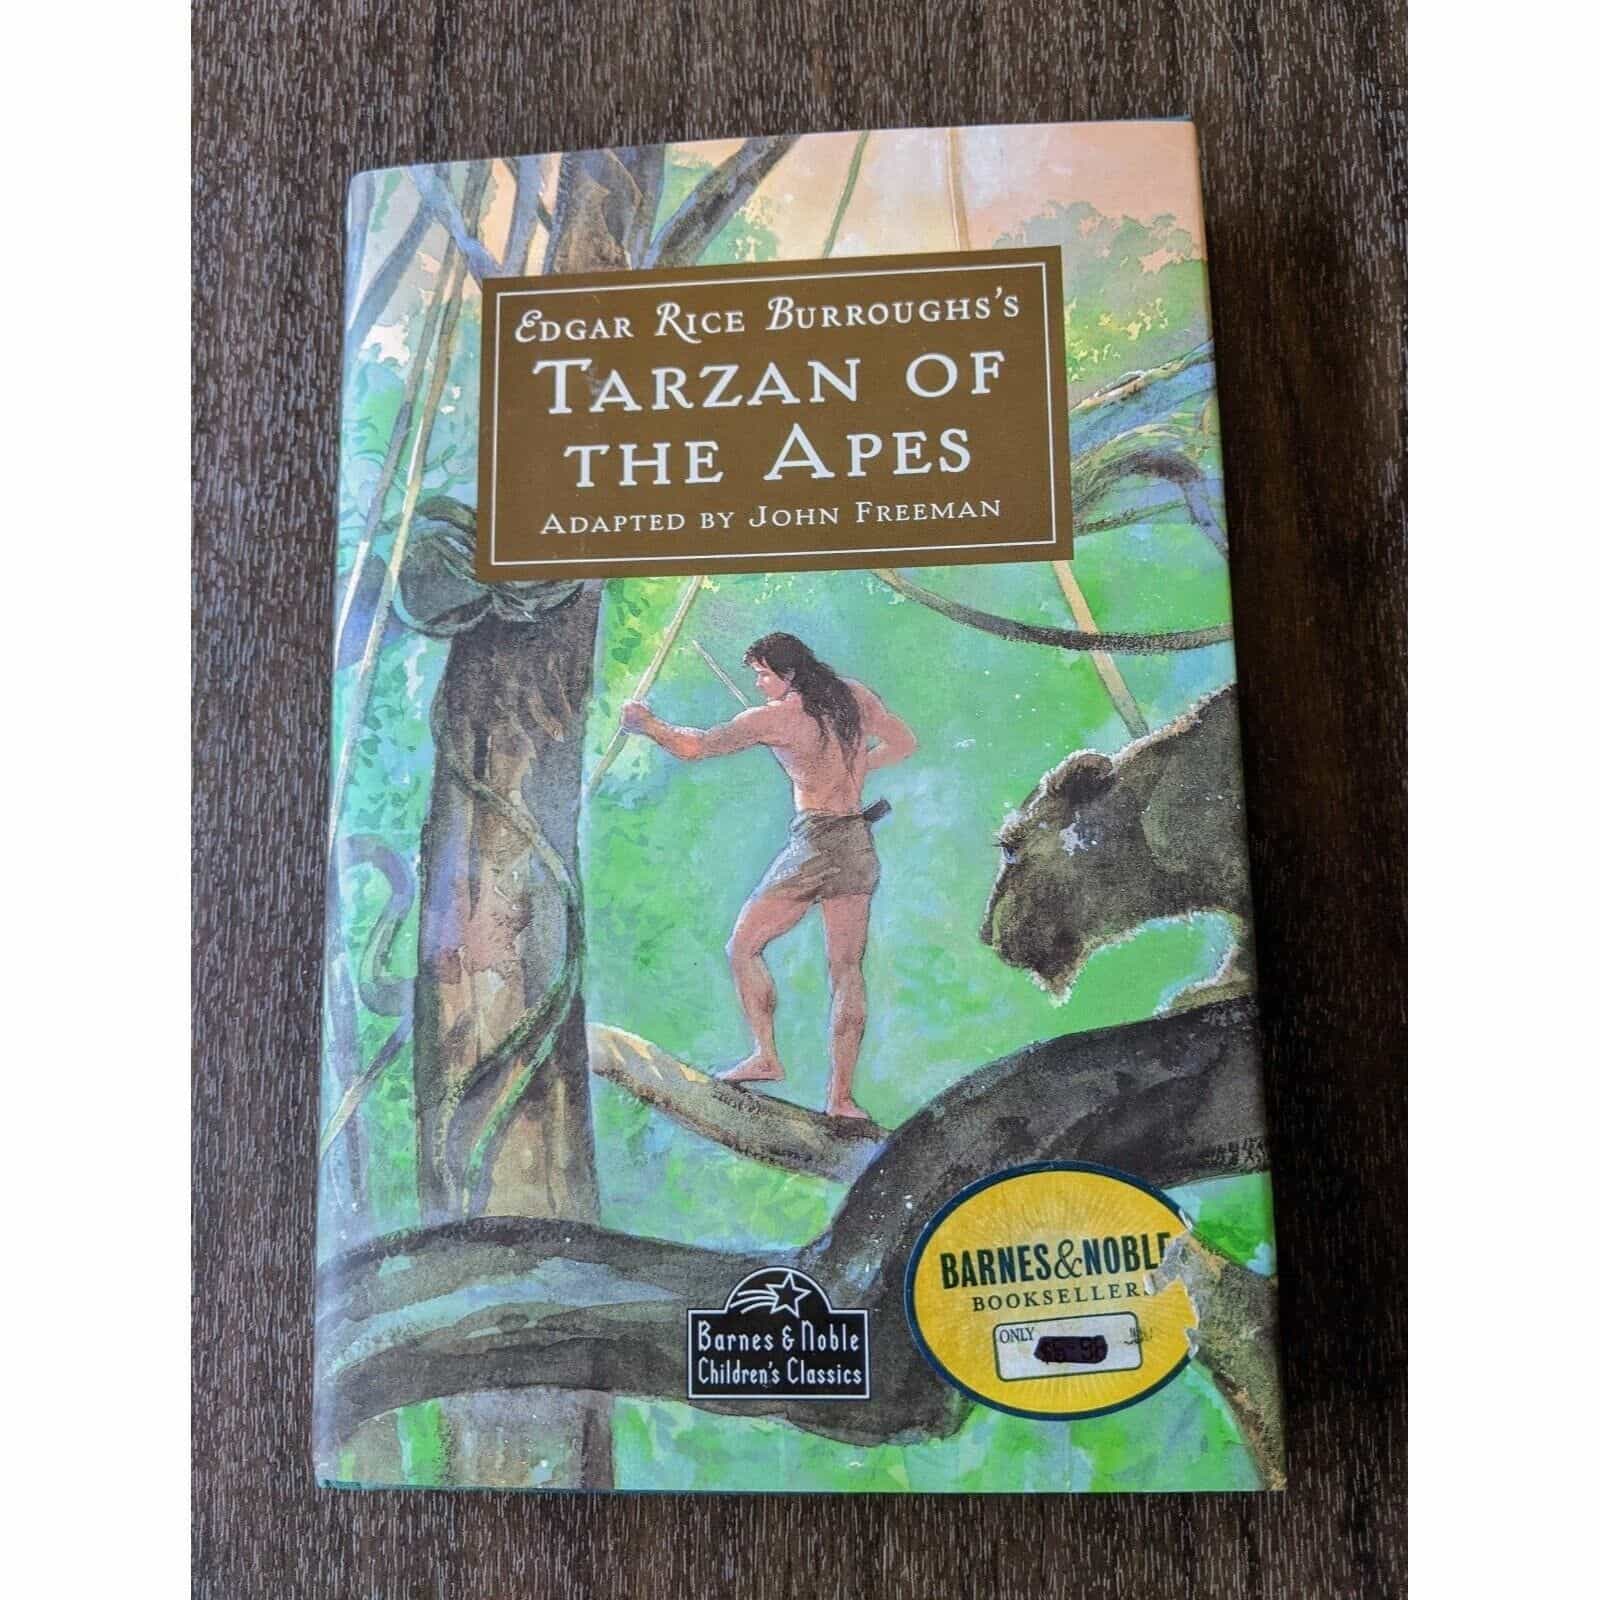 Edgar Rice Burroughs’s Tarzan Of The Apes adapted by John Freeman Book